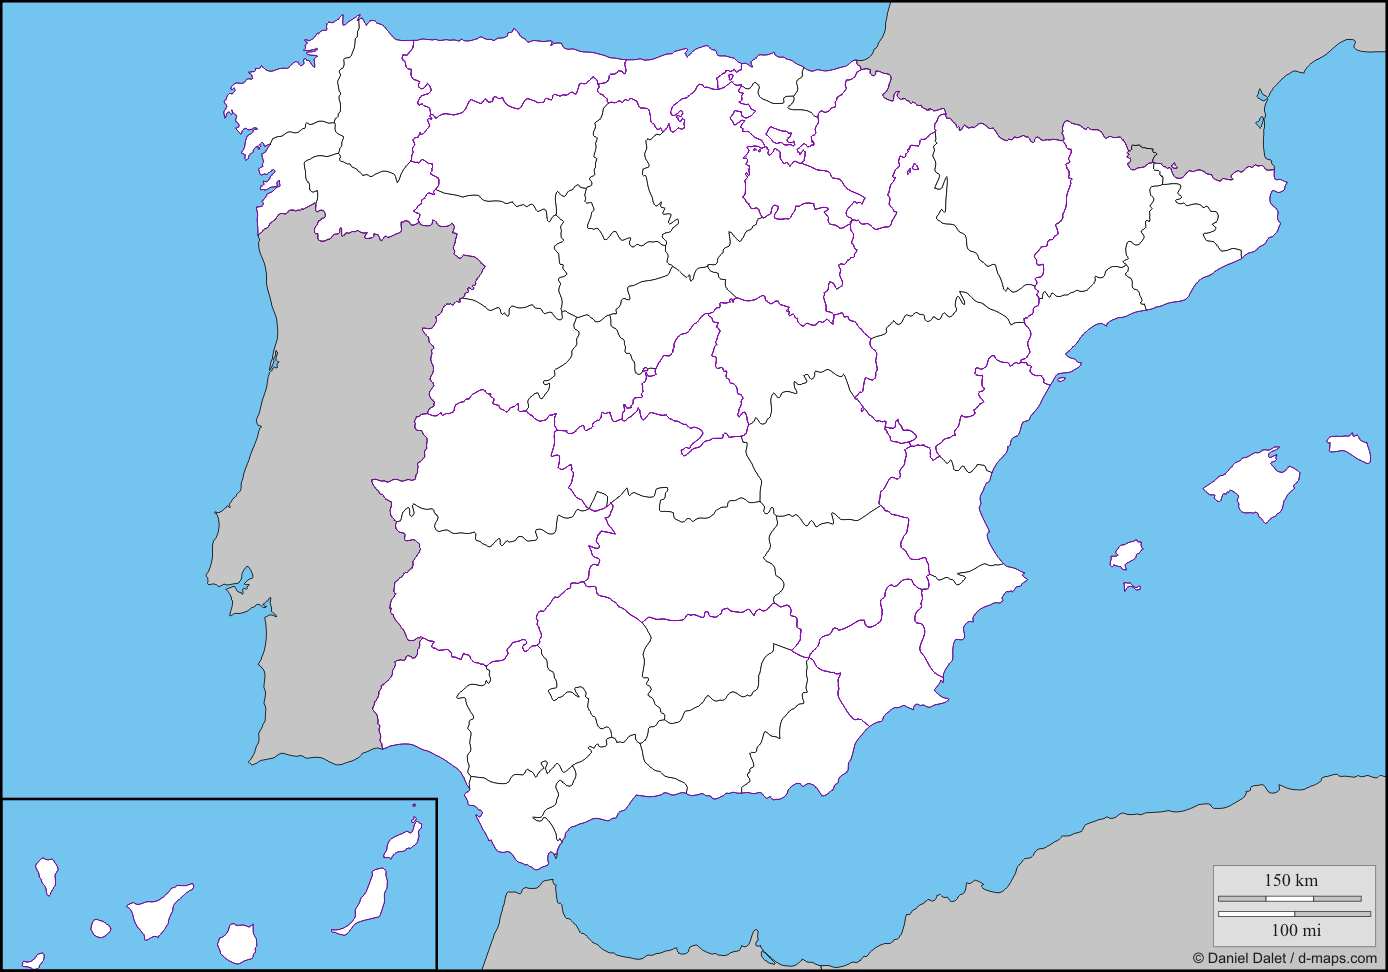 Juegos De Geografía Juego De Encuentra Las Provincias De España En El Mapa Cerebriti 2535